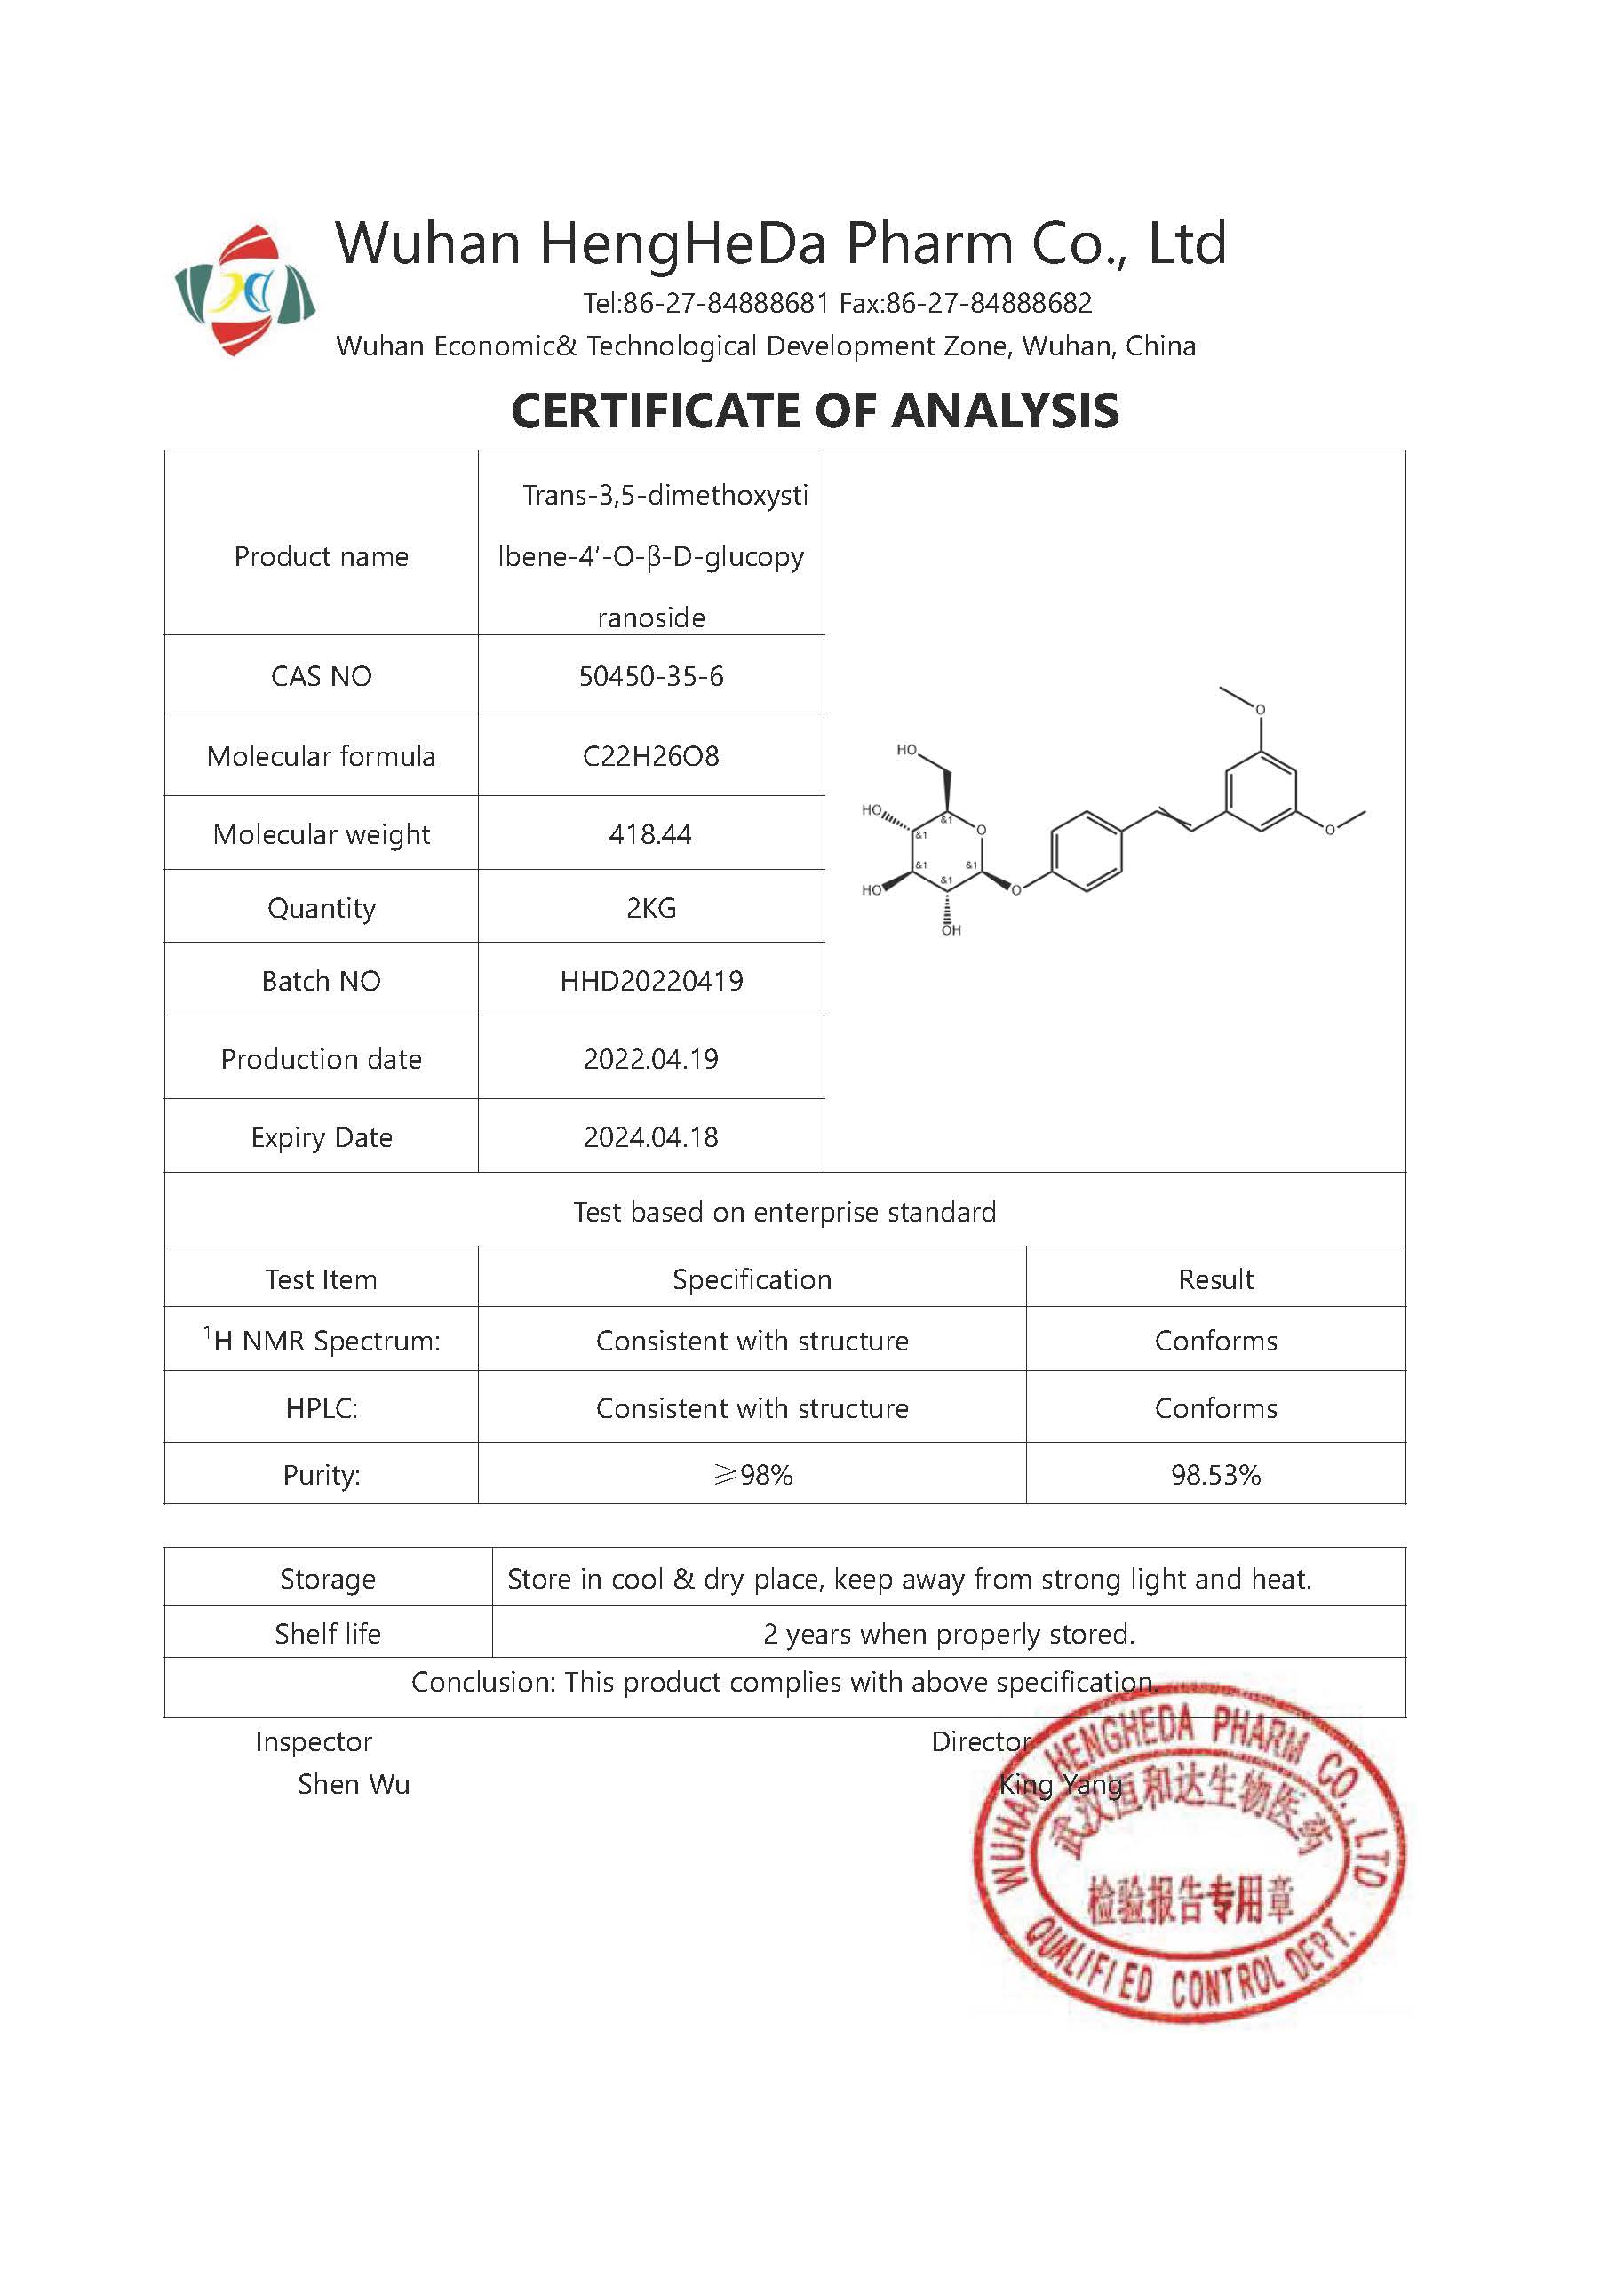 Kaufen trans-3,5-Dimethoxystilben-4'-O-β-D-glucopyranosid CAS 50450-35-6;trans-3,5-Dimethoxystilben-4'-O-β-D-glucopyranosid CAS 50450-35-6 Preis;trans-3,5-Dimethoxystilben-4'-O-β-D-glucopyranosid CAS 50450-35-6 Marken;trans-3,5-Dimethoxystilben-4'-O-β-D-glucopyranosid CAS 50450-35-6 Hersteller;trans-3,5-Dimethoxystilben-4'-O-β-D-glucopyranosid CAS 50450-35-6 Zitat;trans-3,5-Dimethoxystilben-4'-O-β-D-glucopyranosid CAS 50450-35-6 Unternehmen